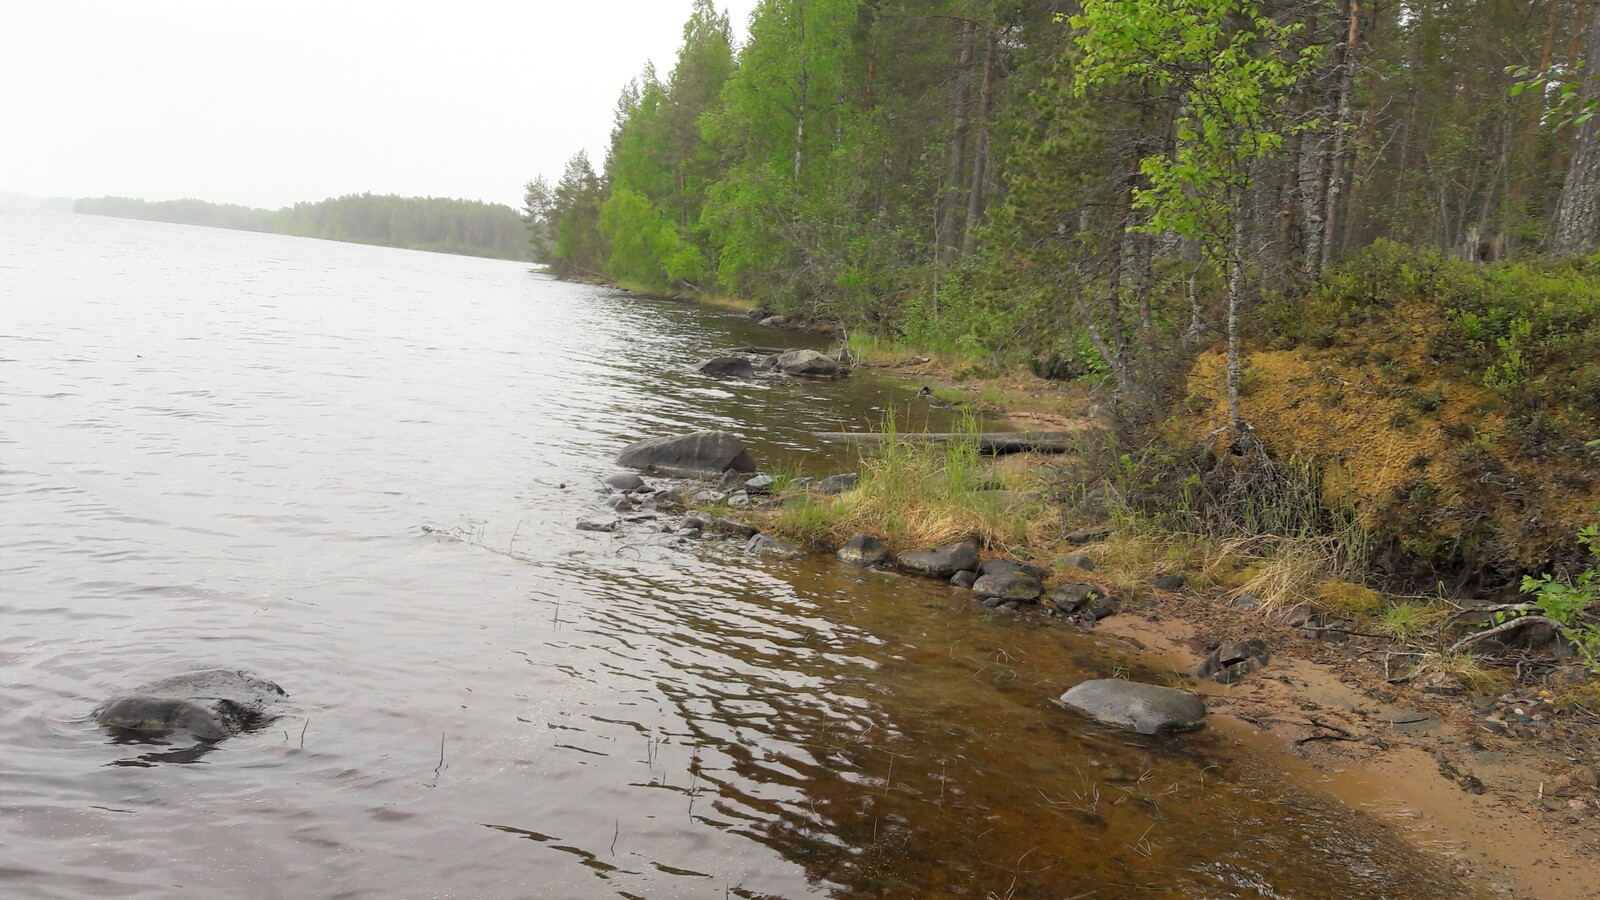 Kesäinen metsä reunustaa järveä vasemmalle kaartavassa osin hiekkaisessa ja kivisessä rantaviivassa.